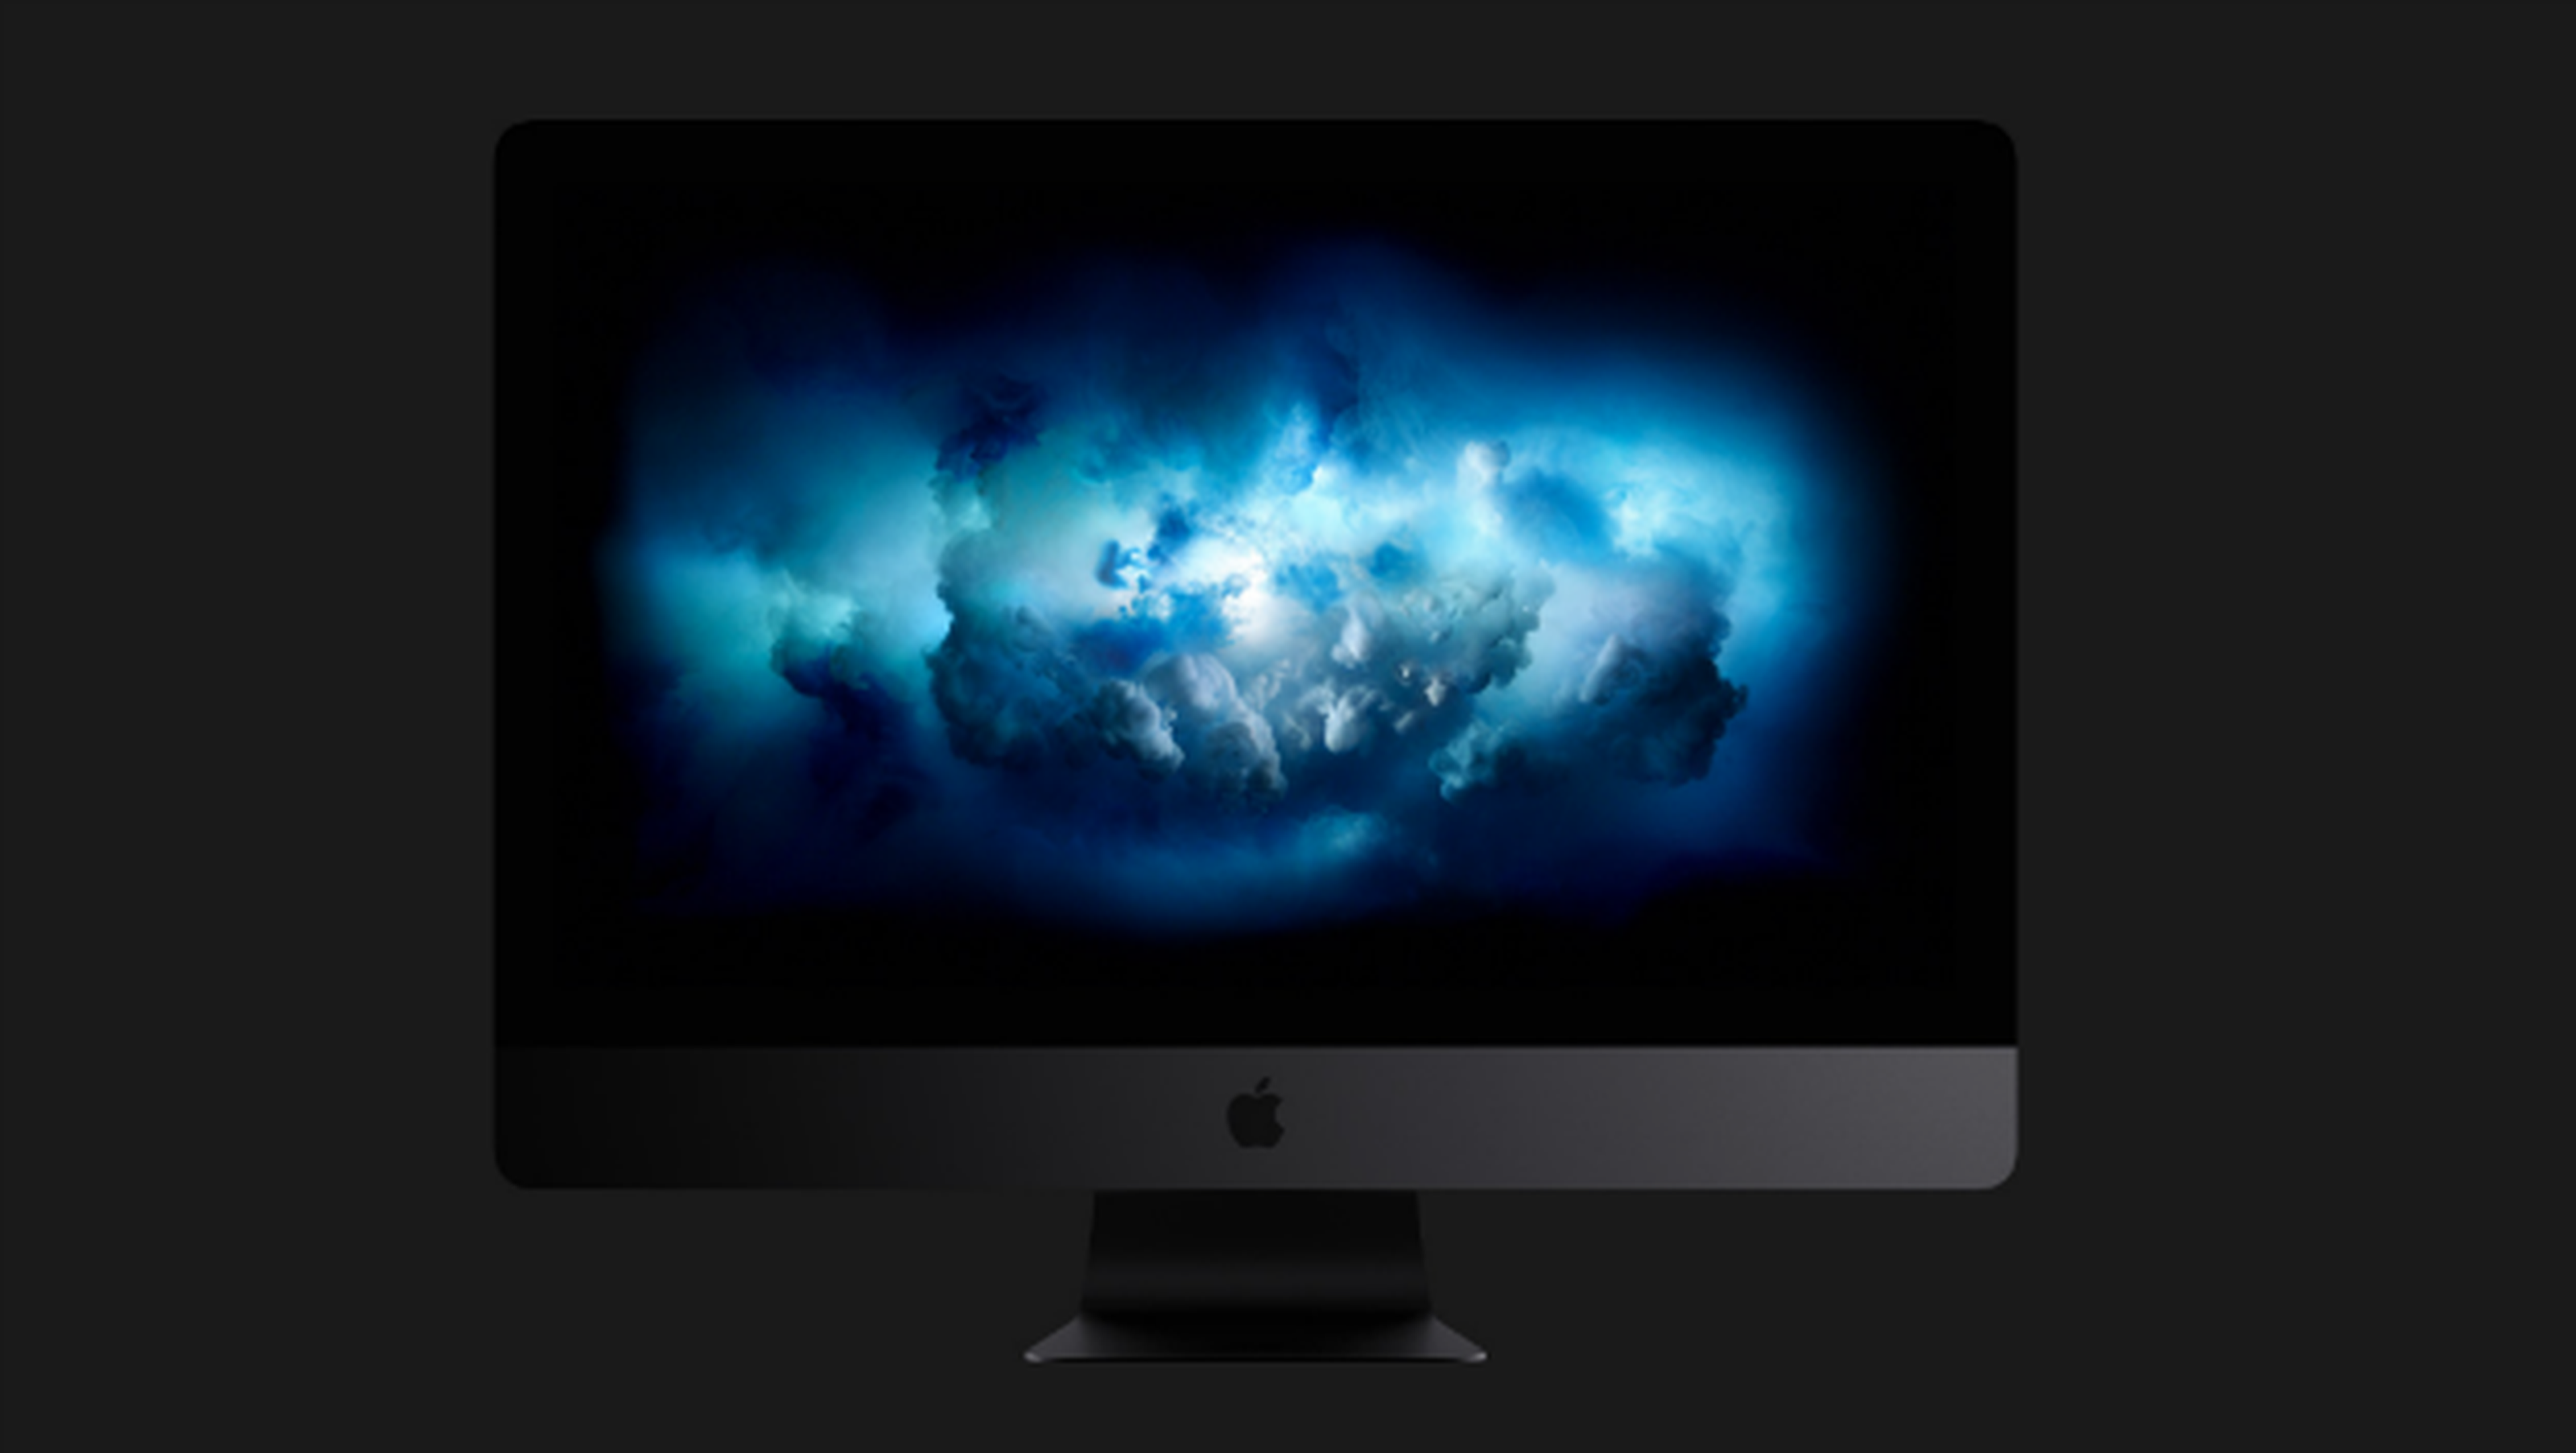 granizo entrada recepción Descarga ya el fondo de pantalla 5K del nuevo iMac Pro | Computer Hoy